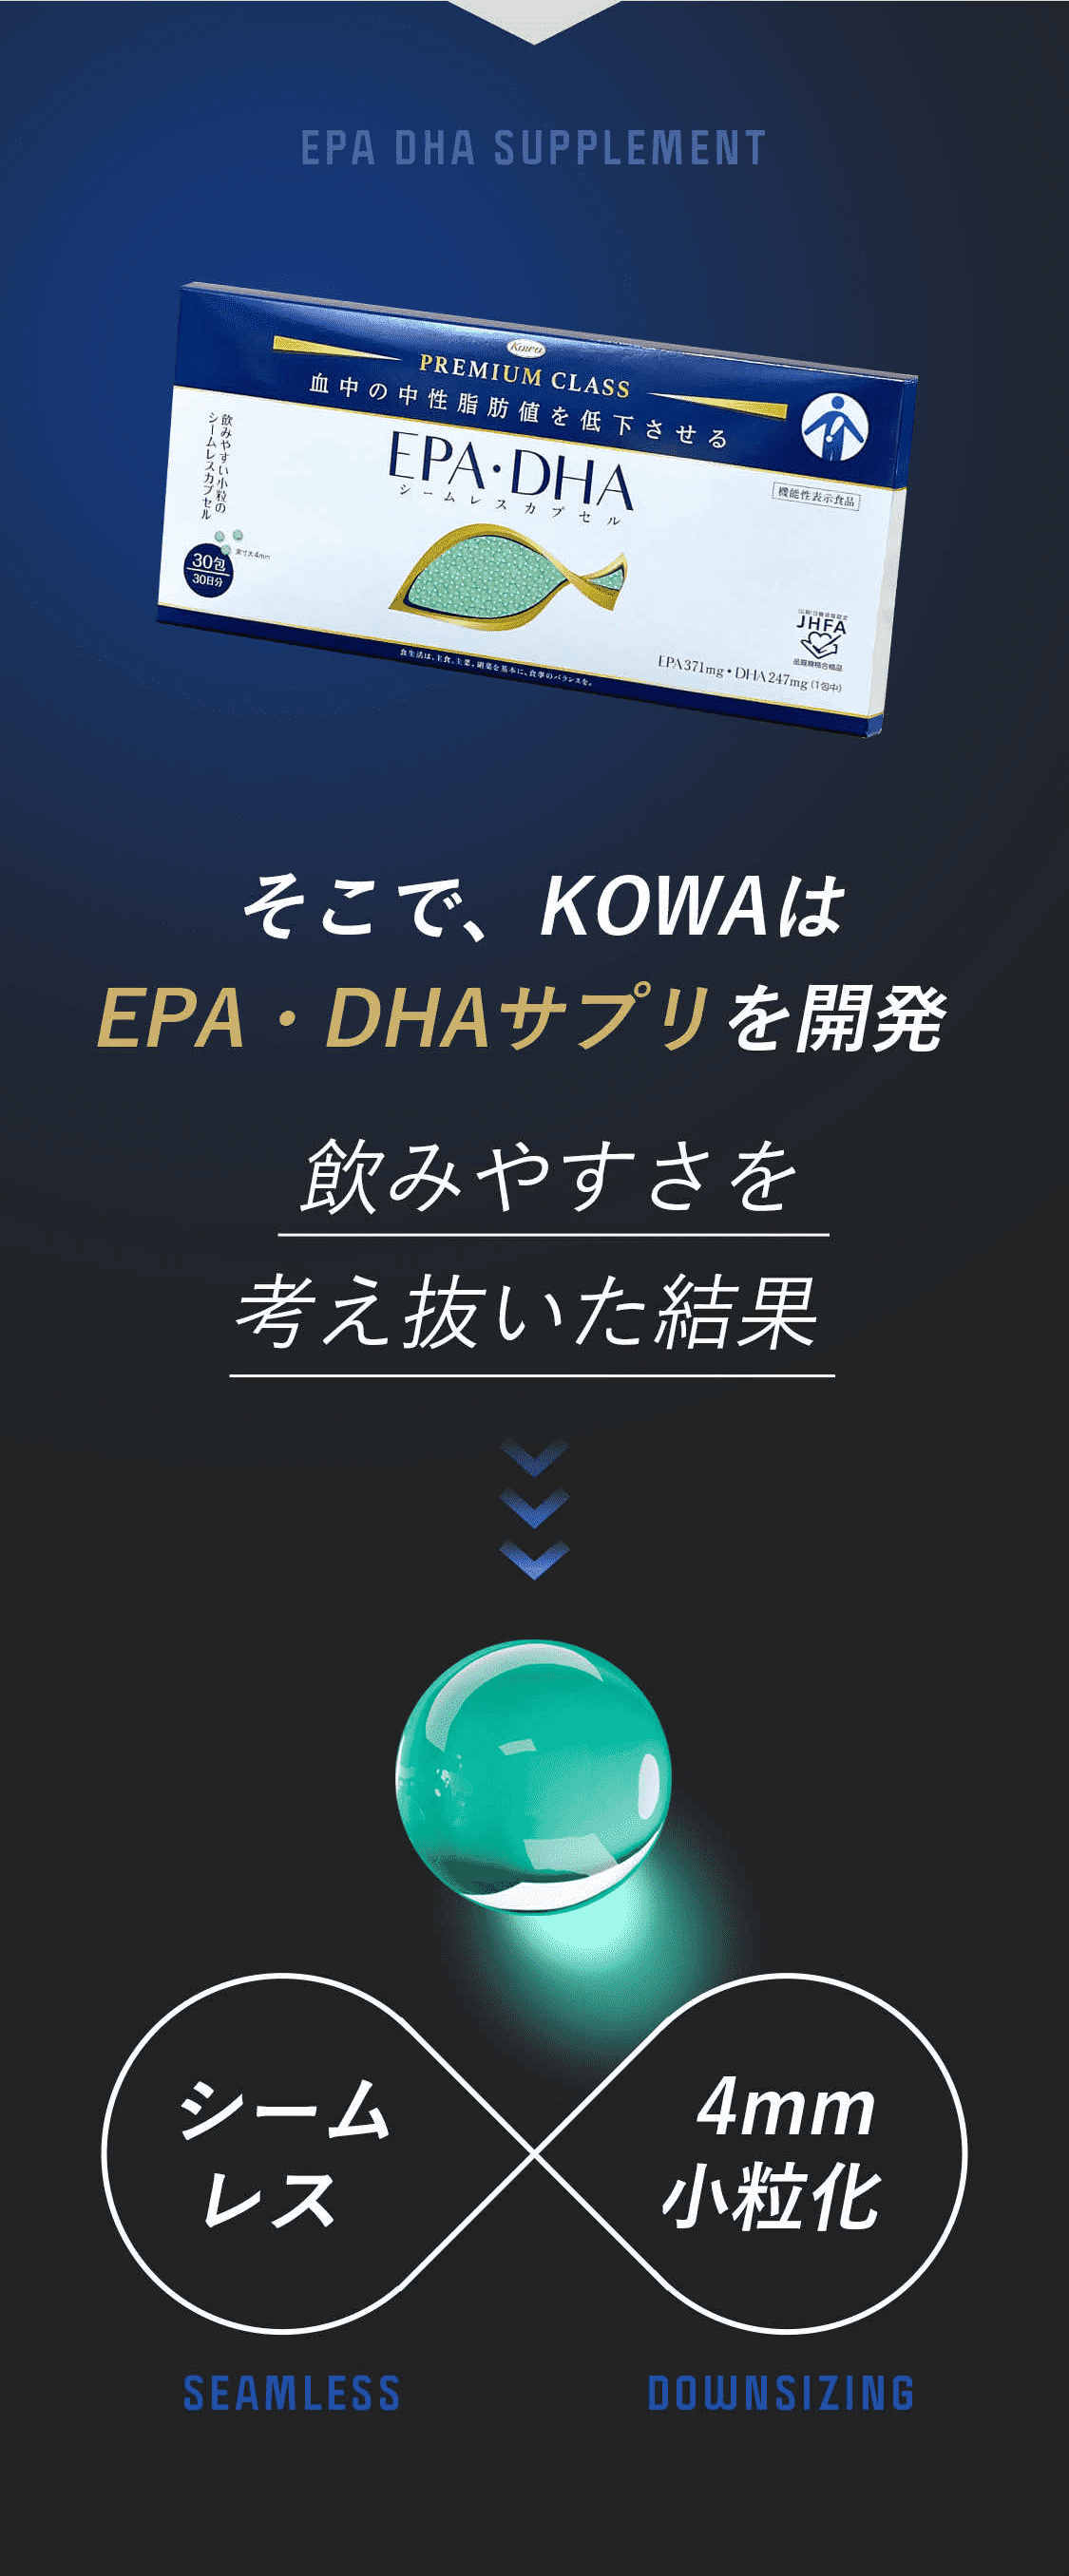 そこで、KOWAはEPA・DHAサプリを開発 飲みやすさを考え抜いた結果 シームレス×4mm小粒化